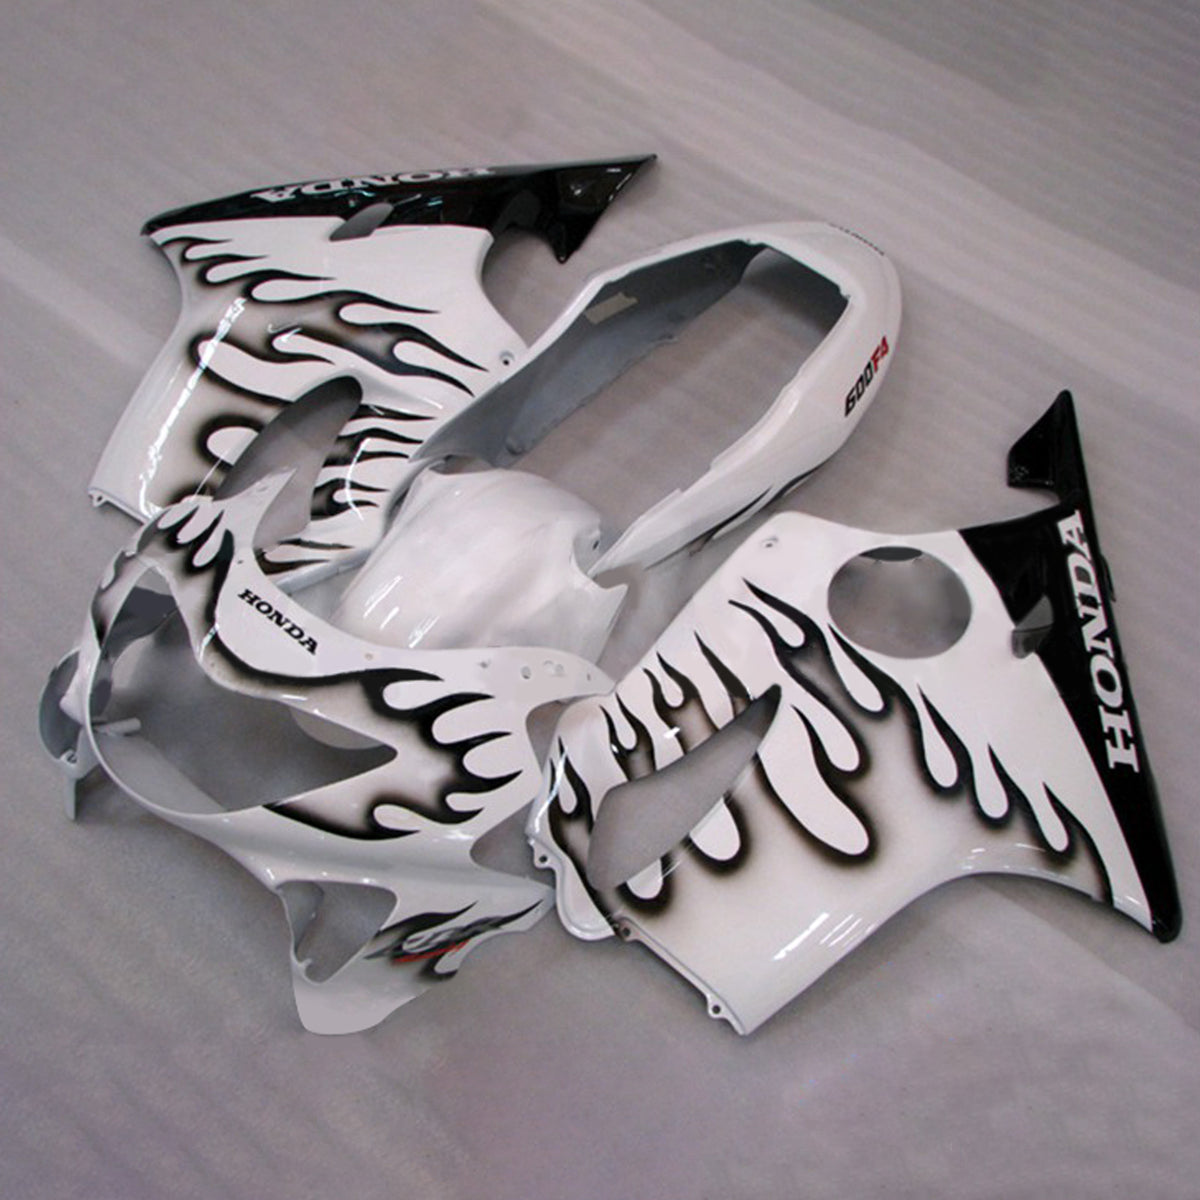 Amotopart 1999-2000 CBR600 F4 Honda White with Black Flame Fairing Kit